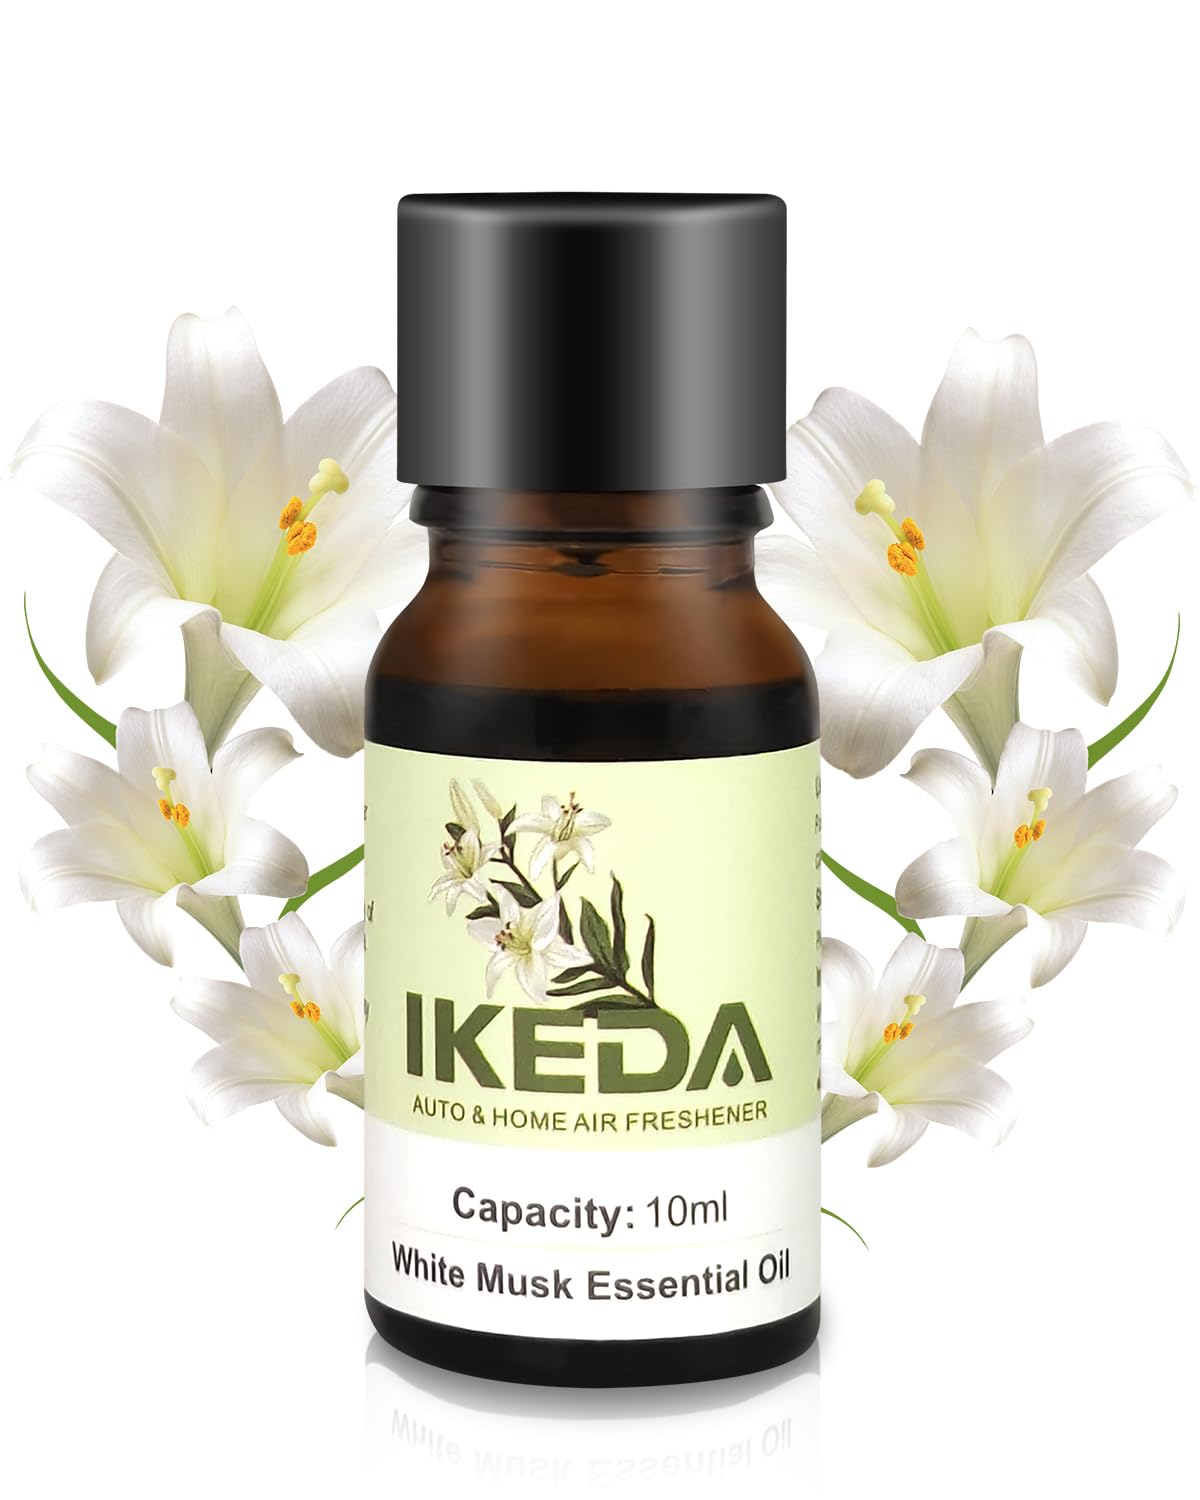 Ätherische Öle Nachfüllung für Auto Lufterfrischer丨Hergestellt Aus Reinen Natürlichen Pflanzenextrakten丨Aromatherapie Öle für Ikeda Auto Duft Diffusor von Ikeda scents